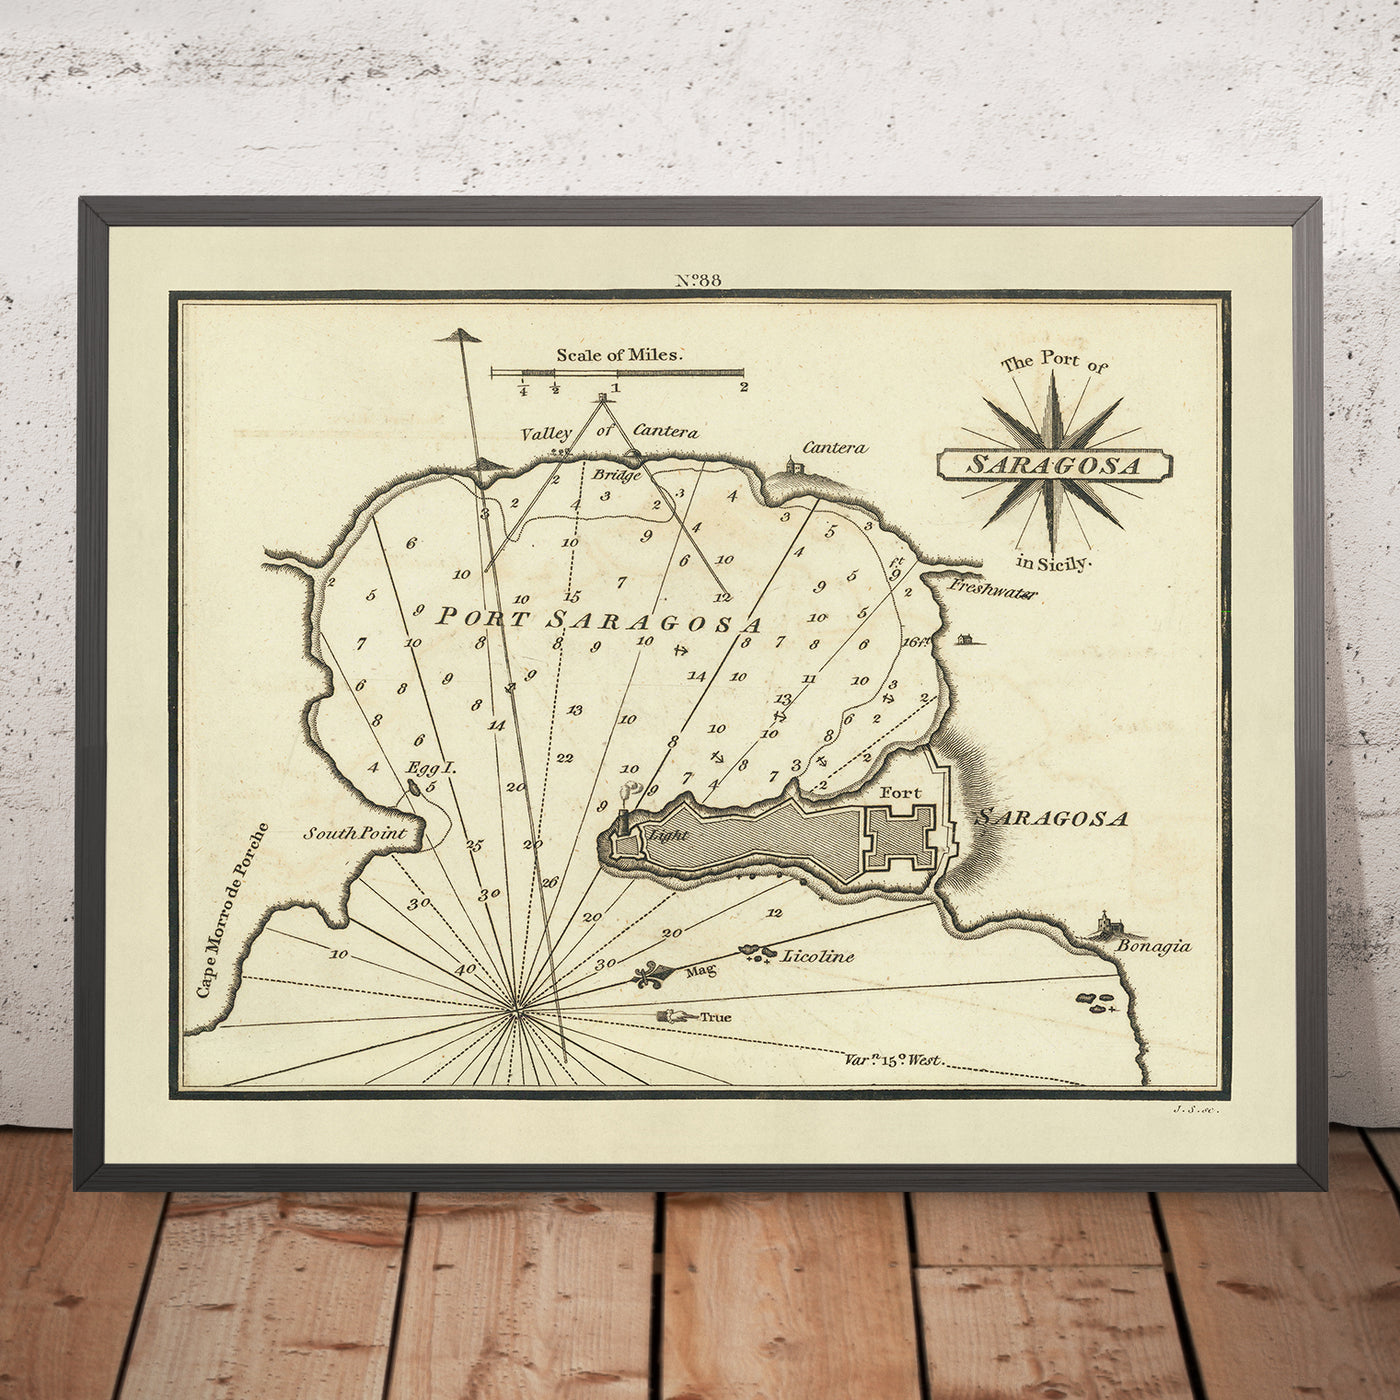 Seekarte des alten Hafens von Saragossa von Heather, 1802: Befestigungen, Leuchtturm, Tiefenmessungen